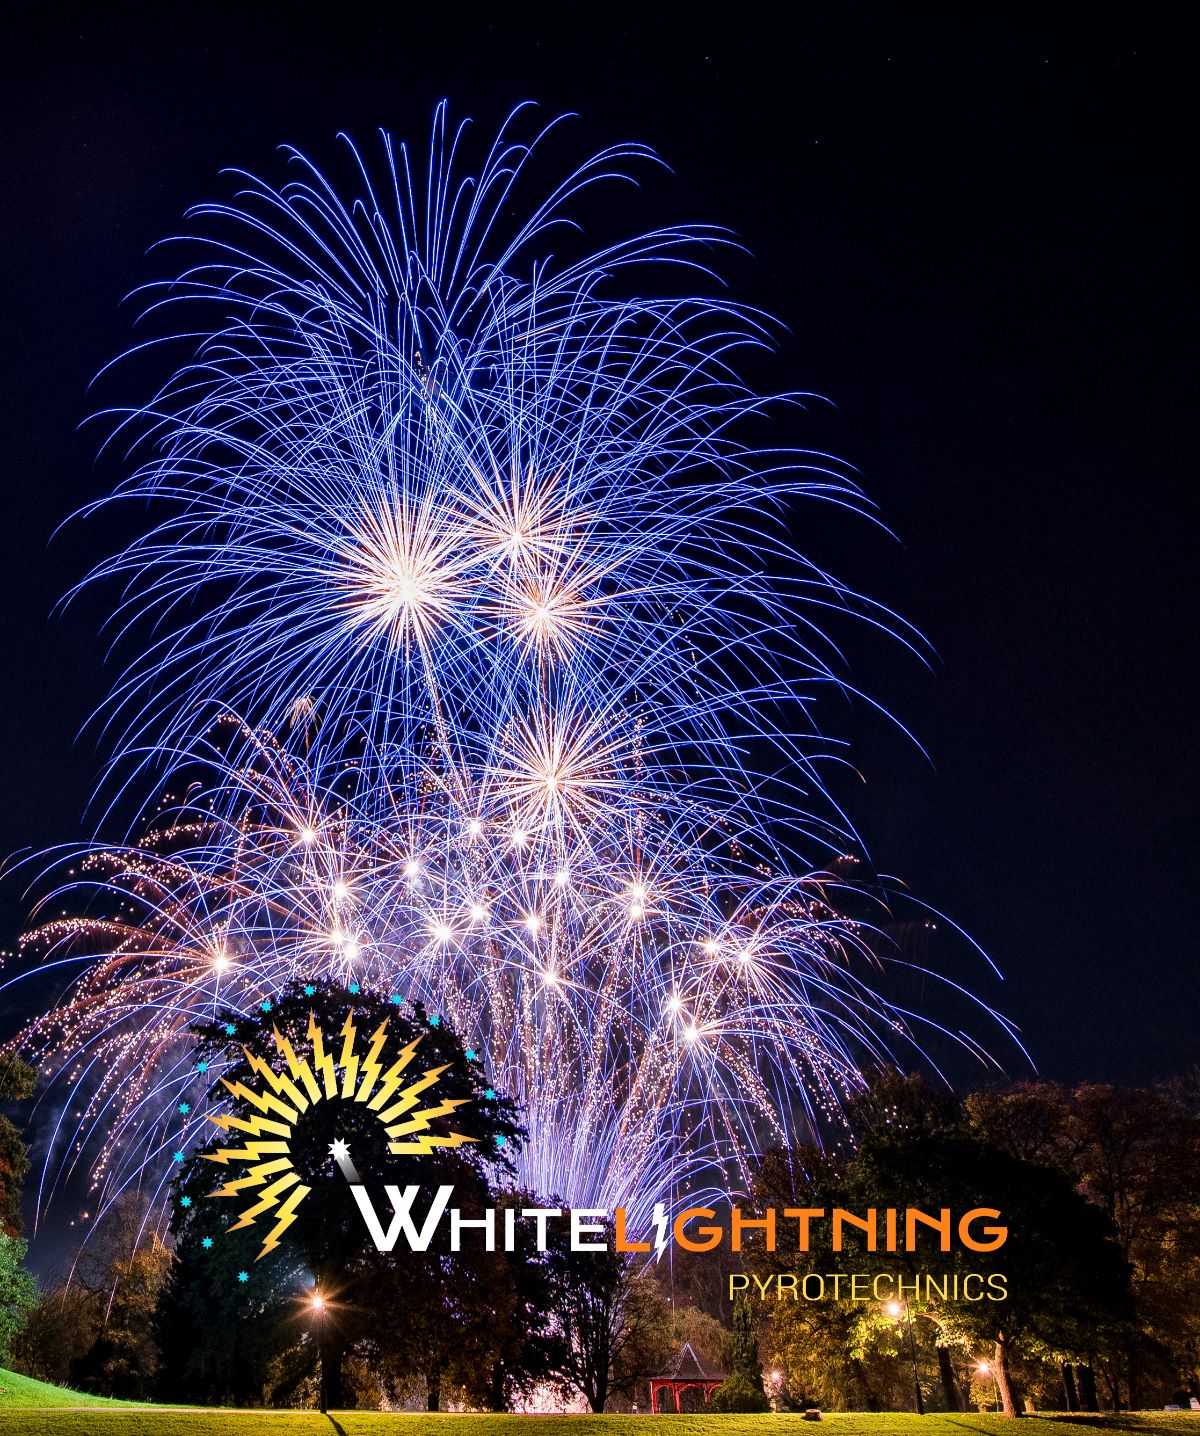 Whitelightning Pyrotechnics-Image-2